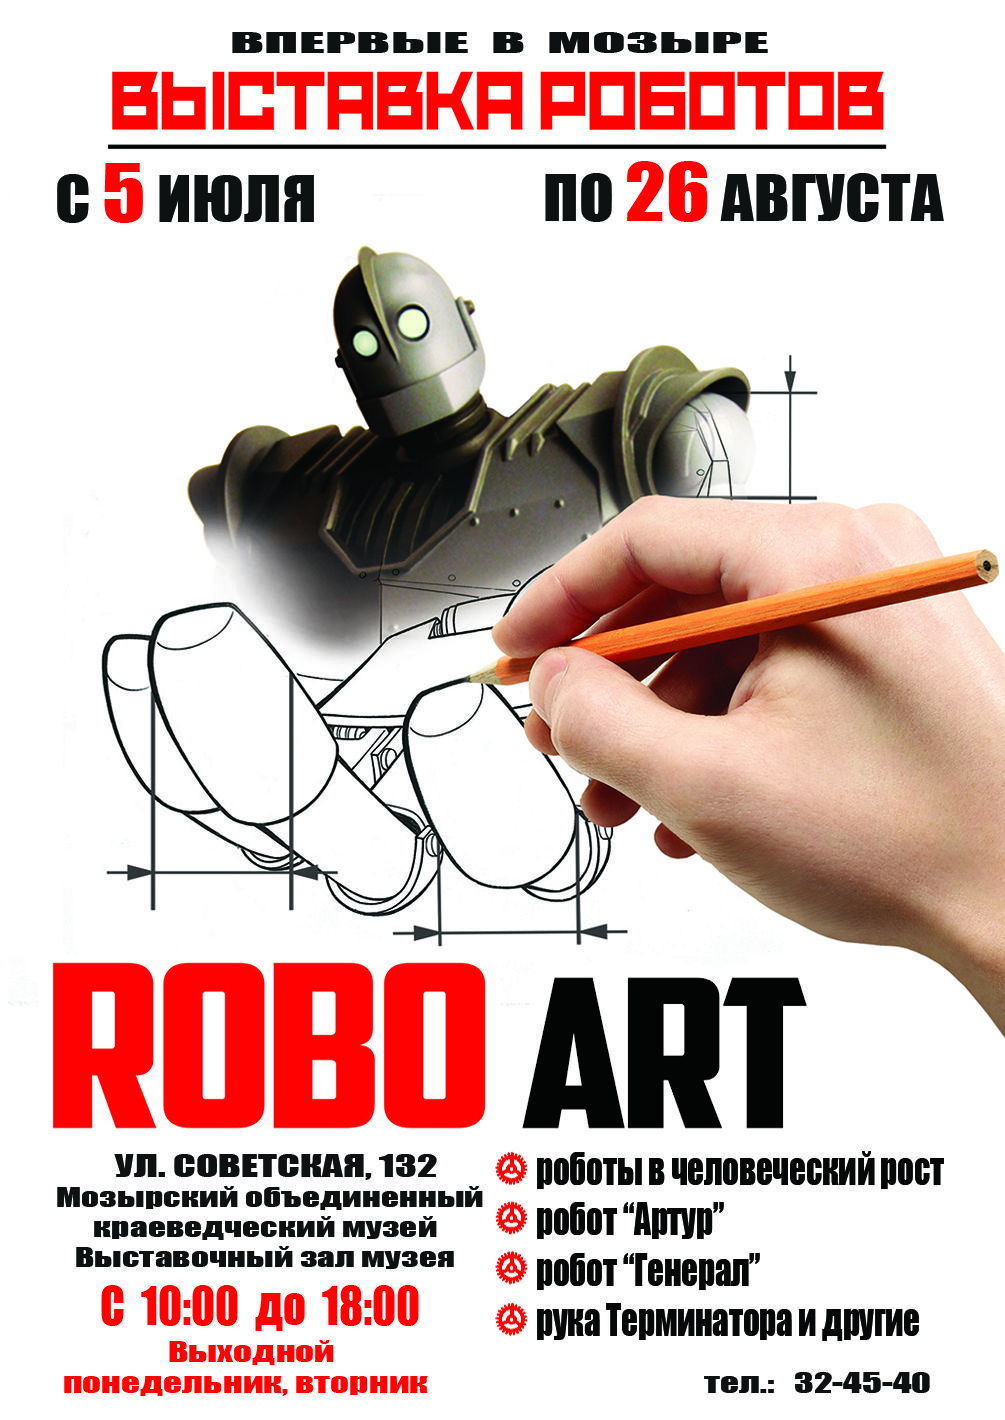  "ROBO Art"